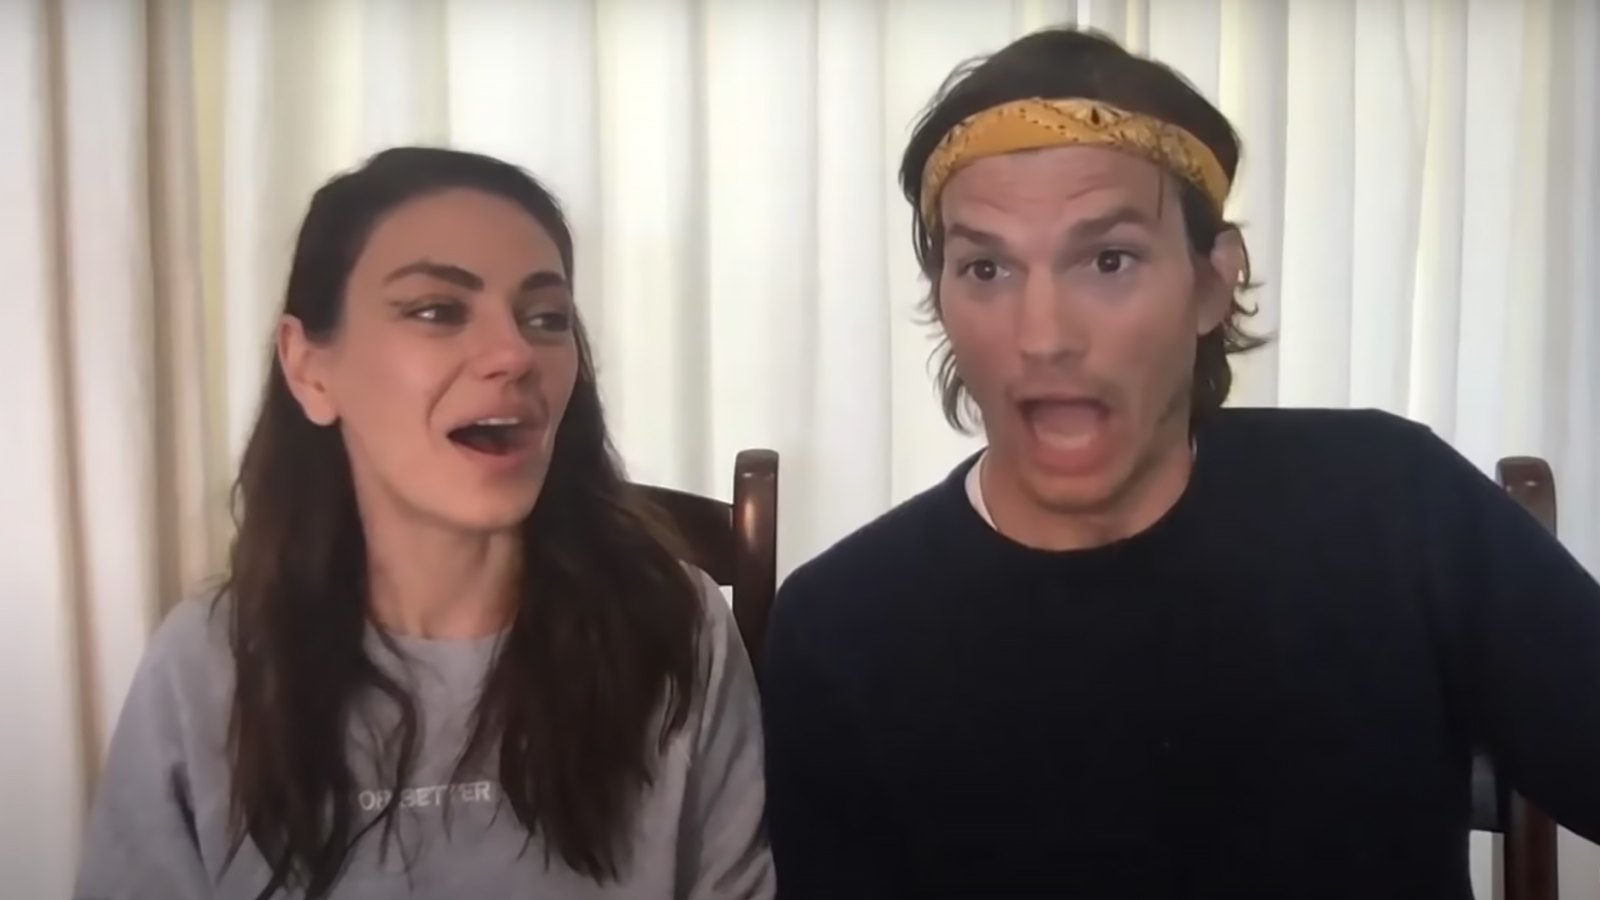 Ashton Kutcher and Mila Kunis Hilariously Fail at Voice Swap Game